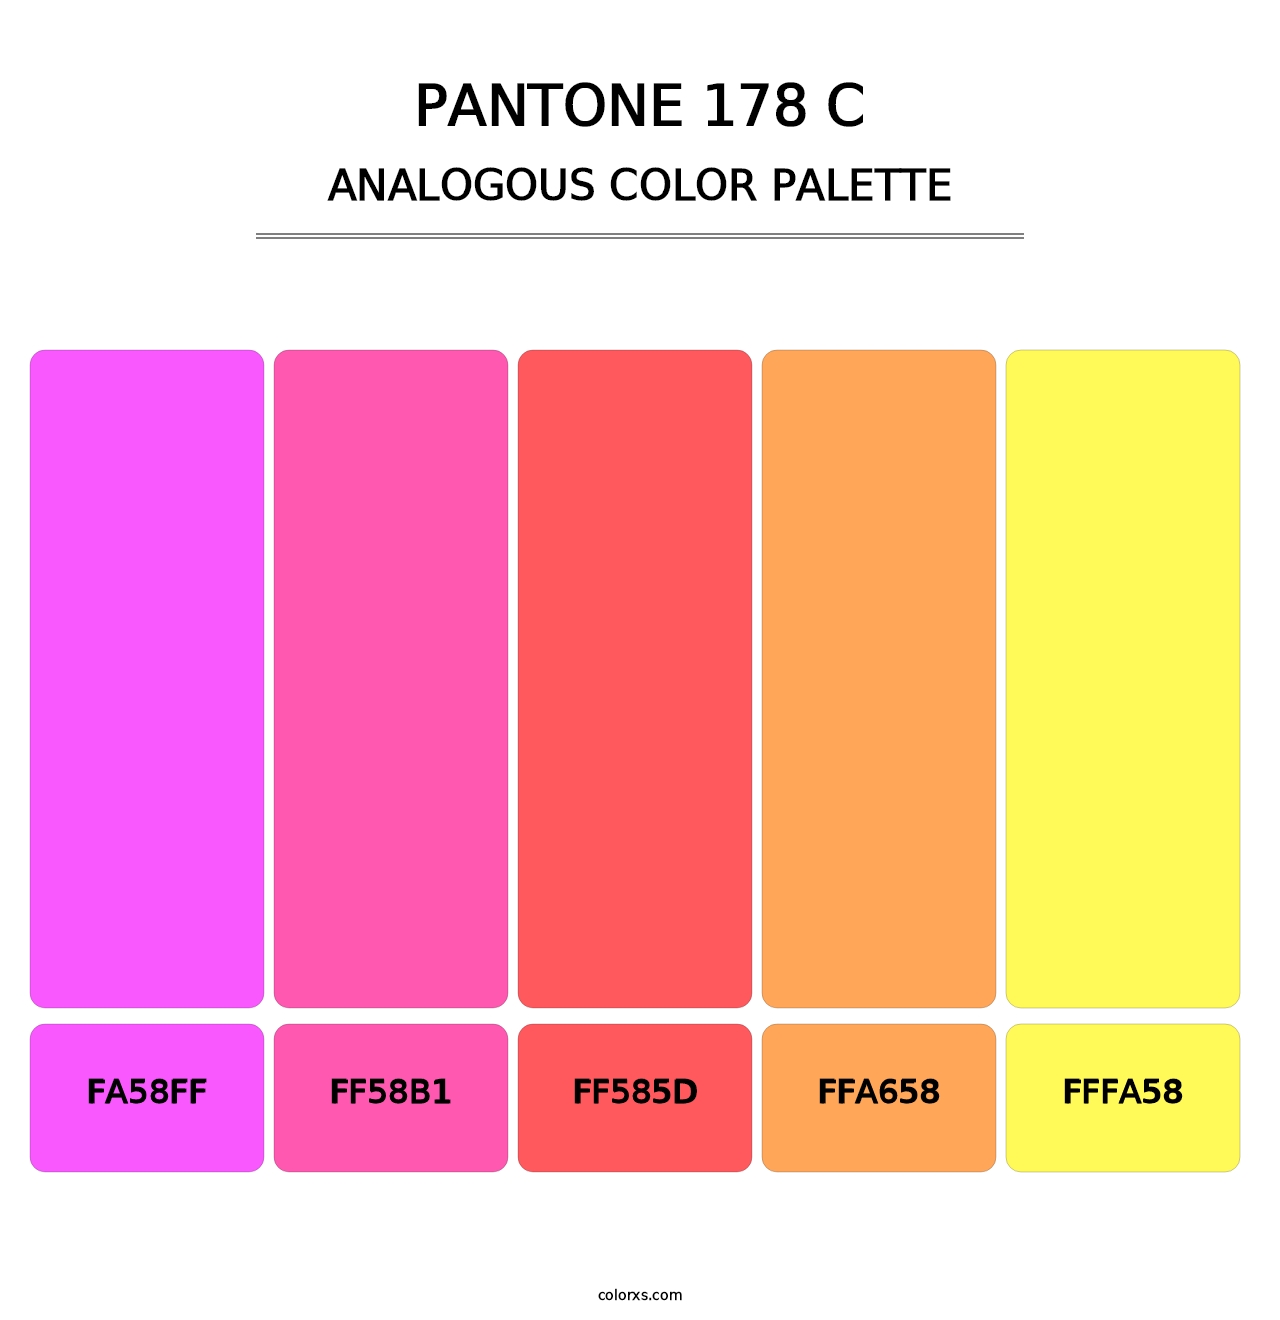 PANTONE 178 C - Analogous Color Palette